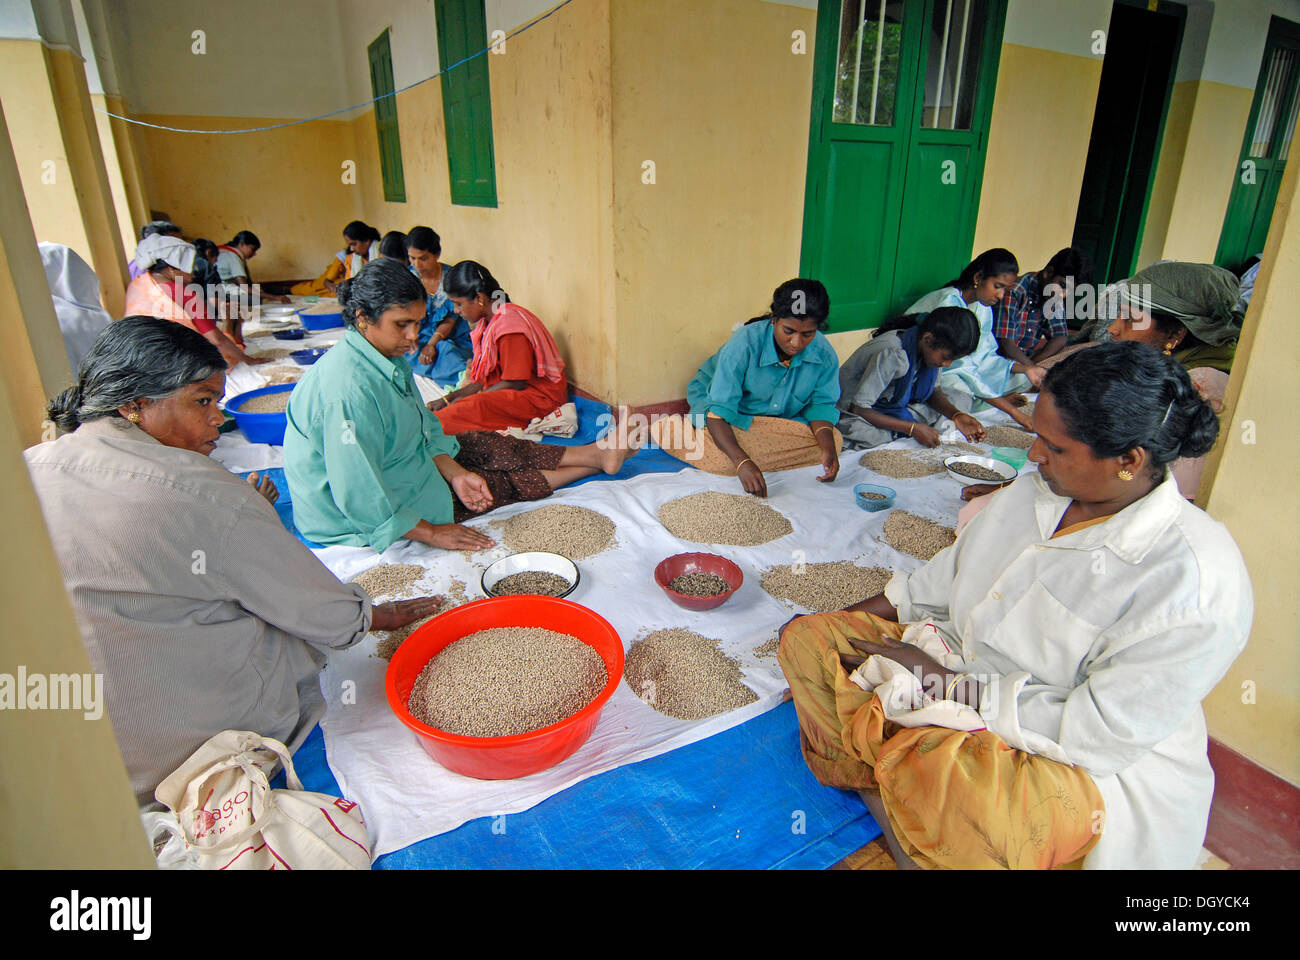 Les travailleuses de poivre de tri en fonction de la qualité, sur une plantation à Thekkady, Kerala, Inde du Sud, Inde, Asie Banque D'Images